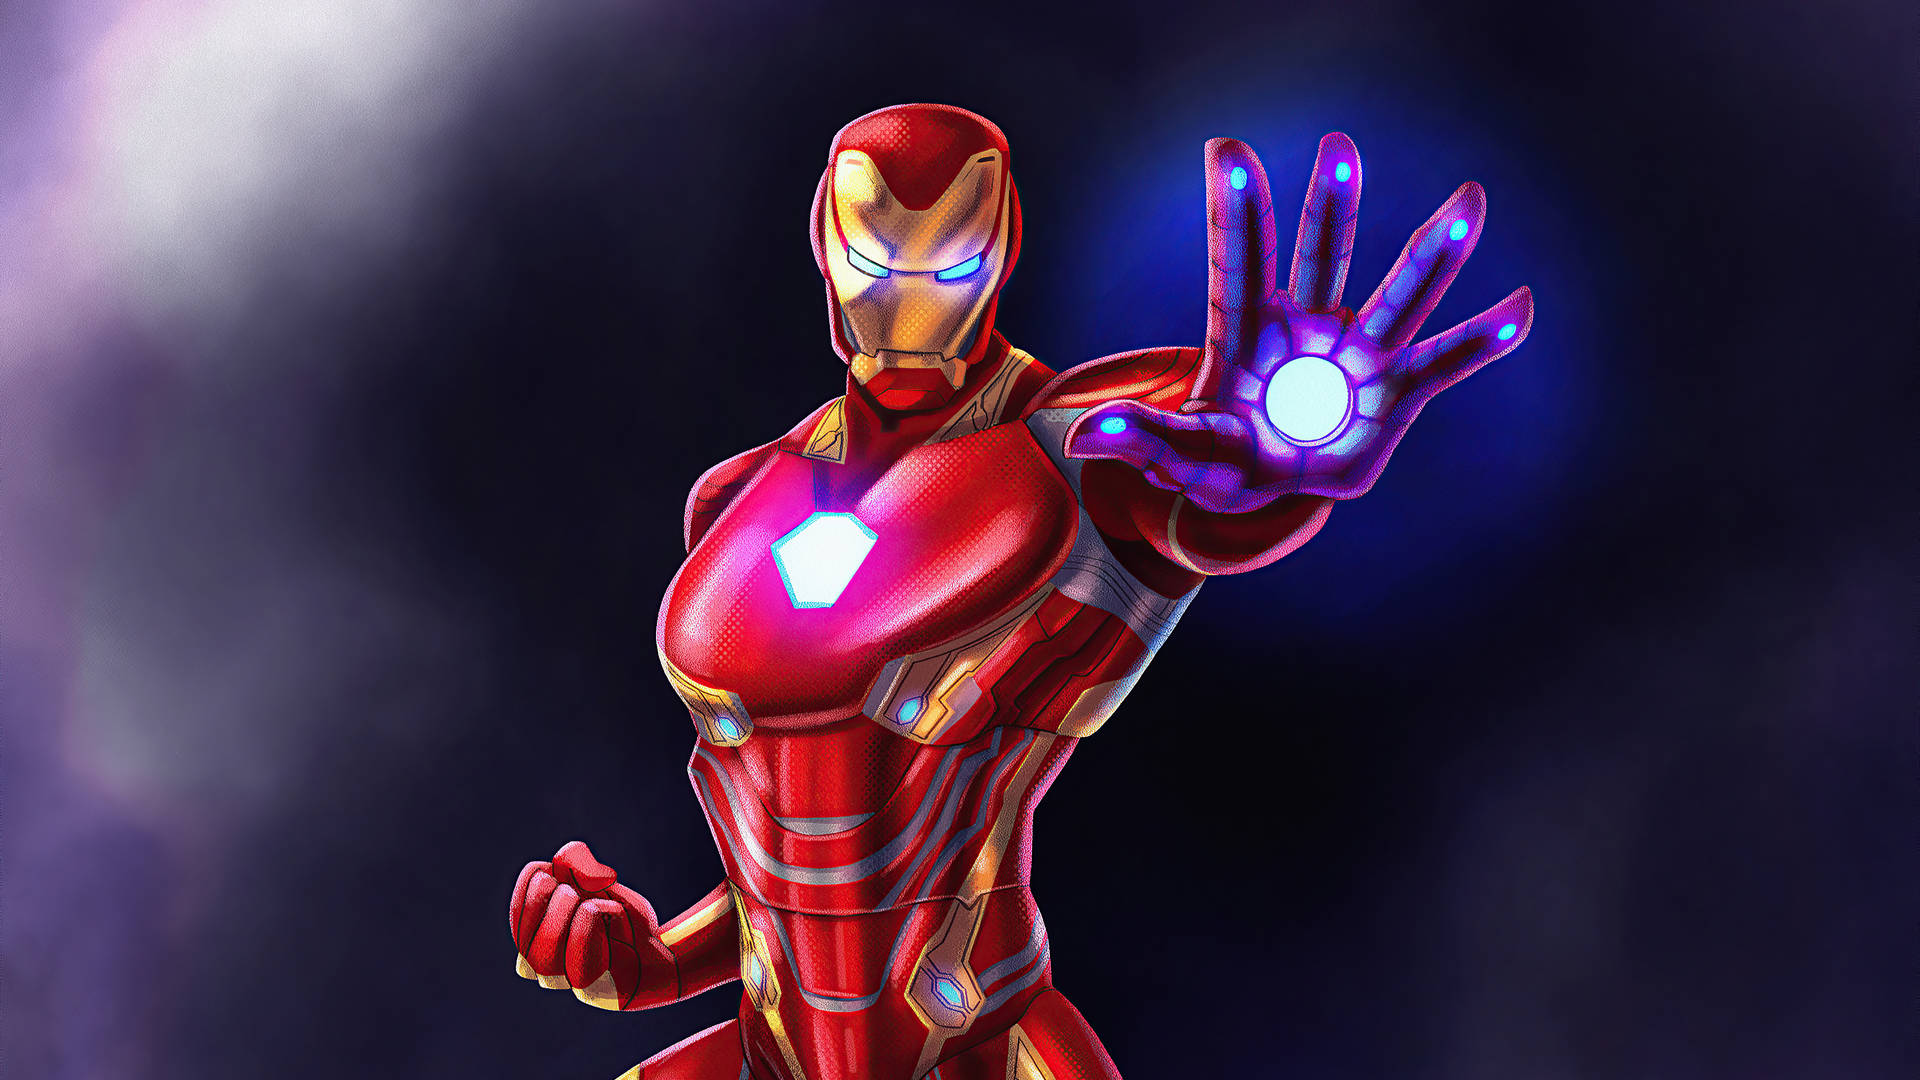 Obrade Arte Hecha Por Fans Del Superhéroe Iron Man. Fondo de pantalla